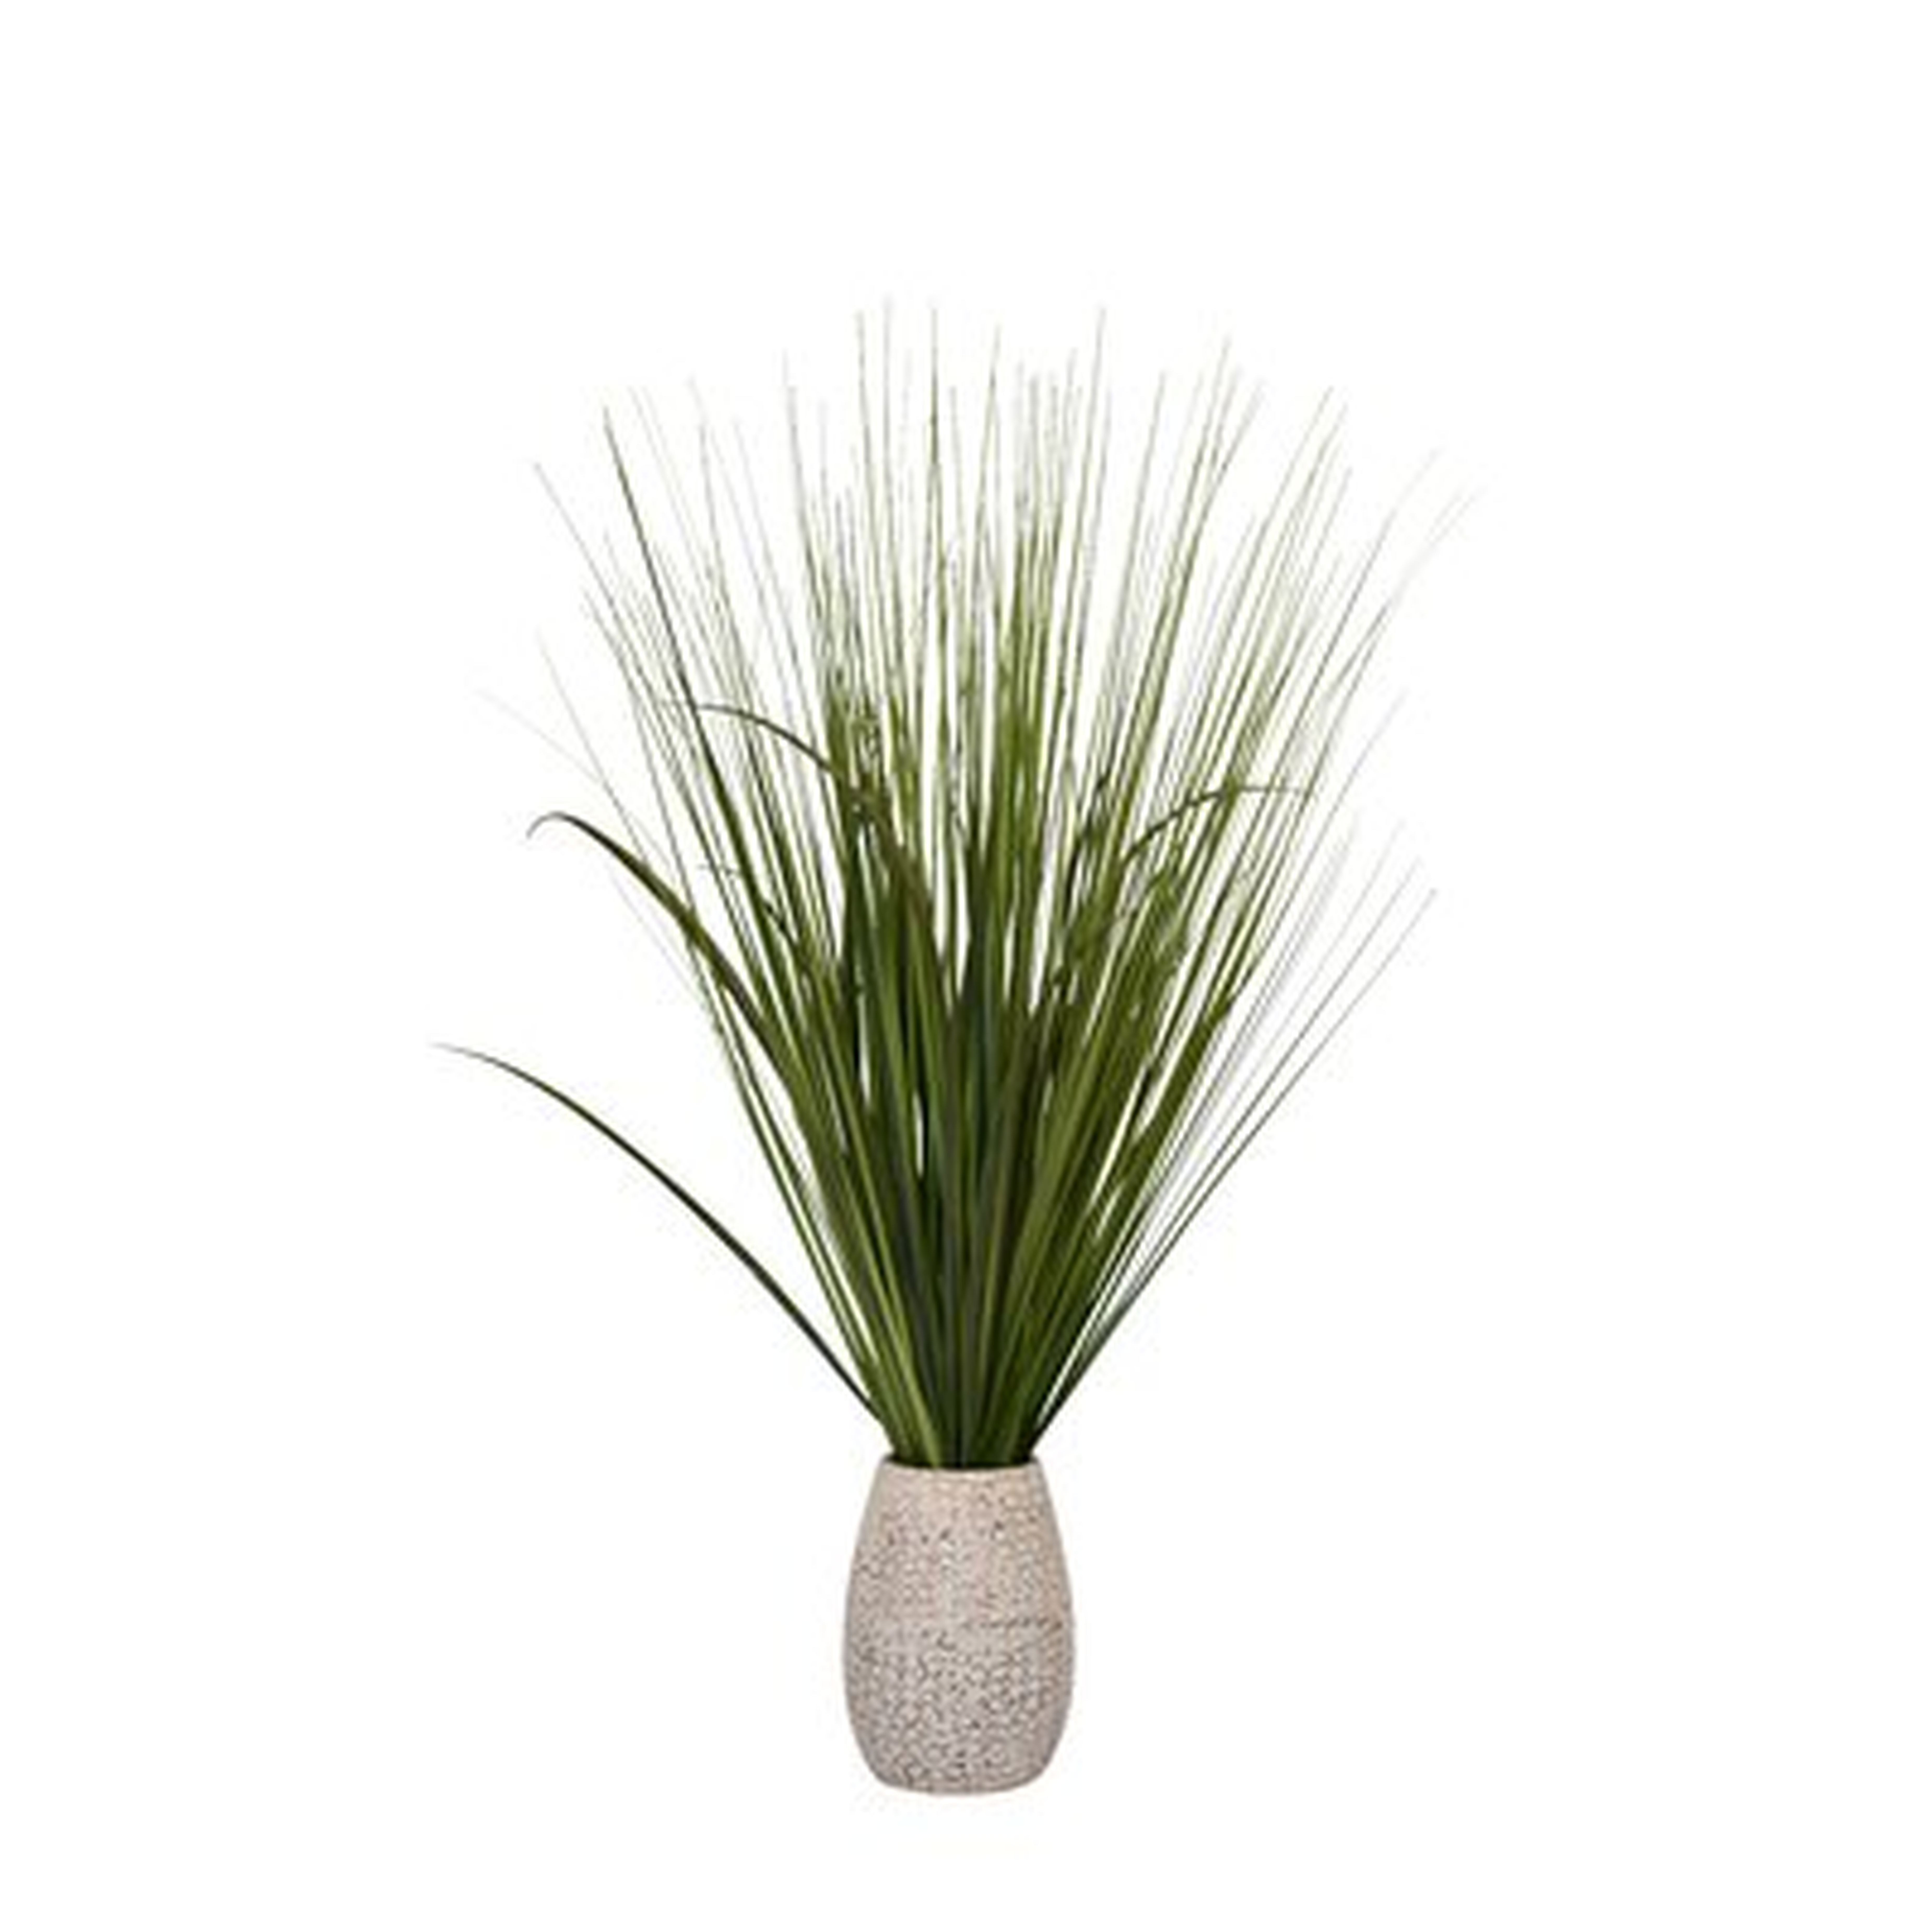 30" Artificial Foliage Grass in Pot - Wayfair